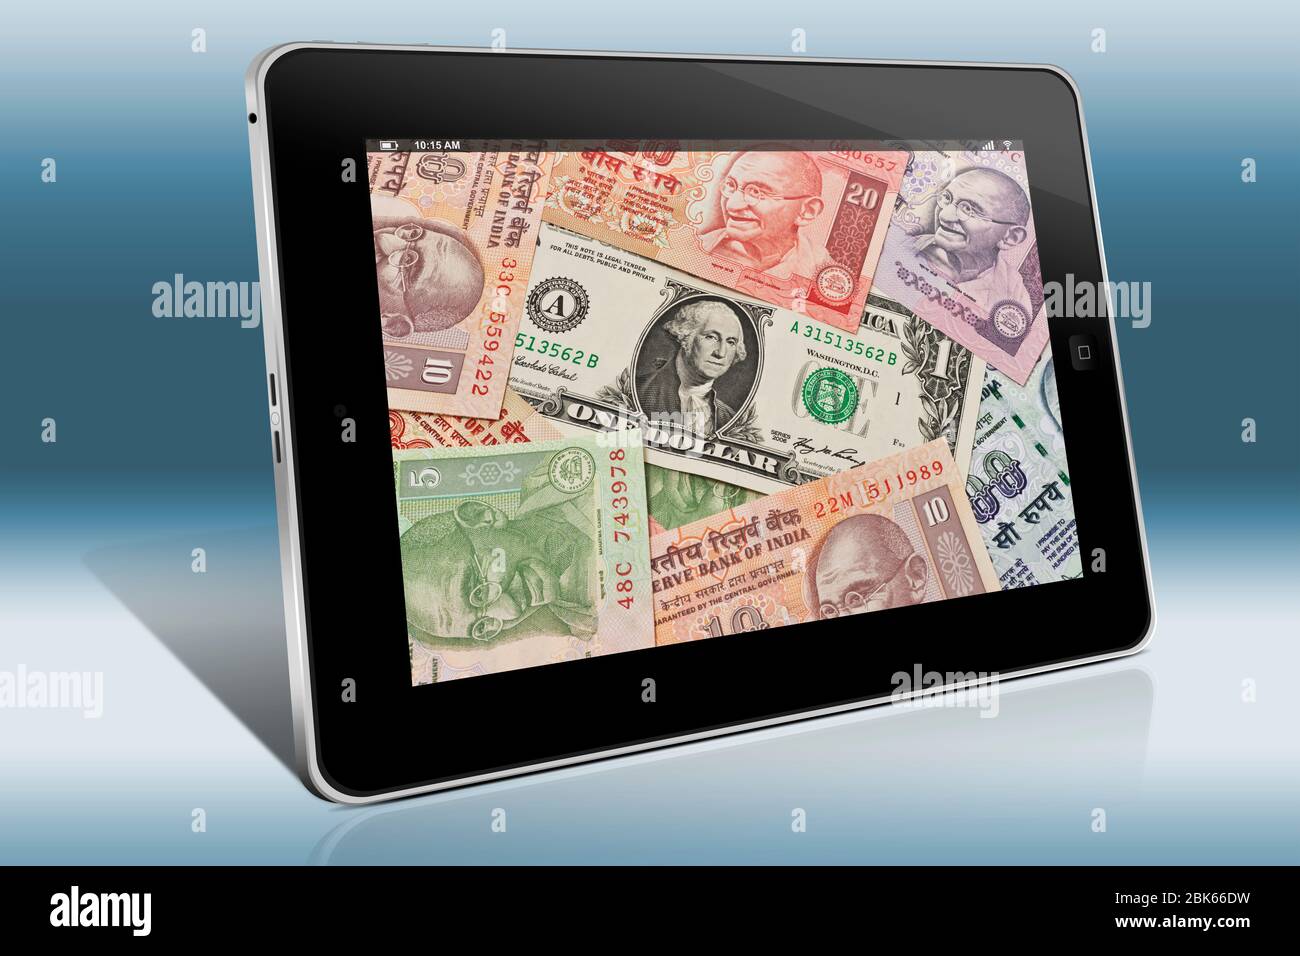 Viele indische Rupie Rechnungen mit dem Porträt von Mahatma Gandhi nebeneinander liegen. In der Mitte befindet sich einen 1 US-Dollar-Schein. Stockfoto